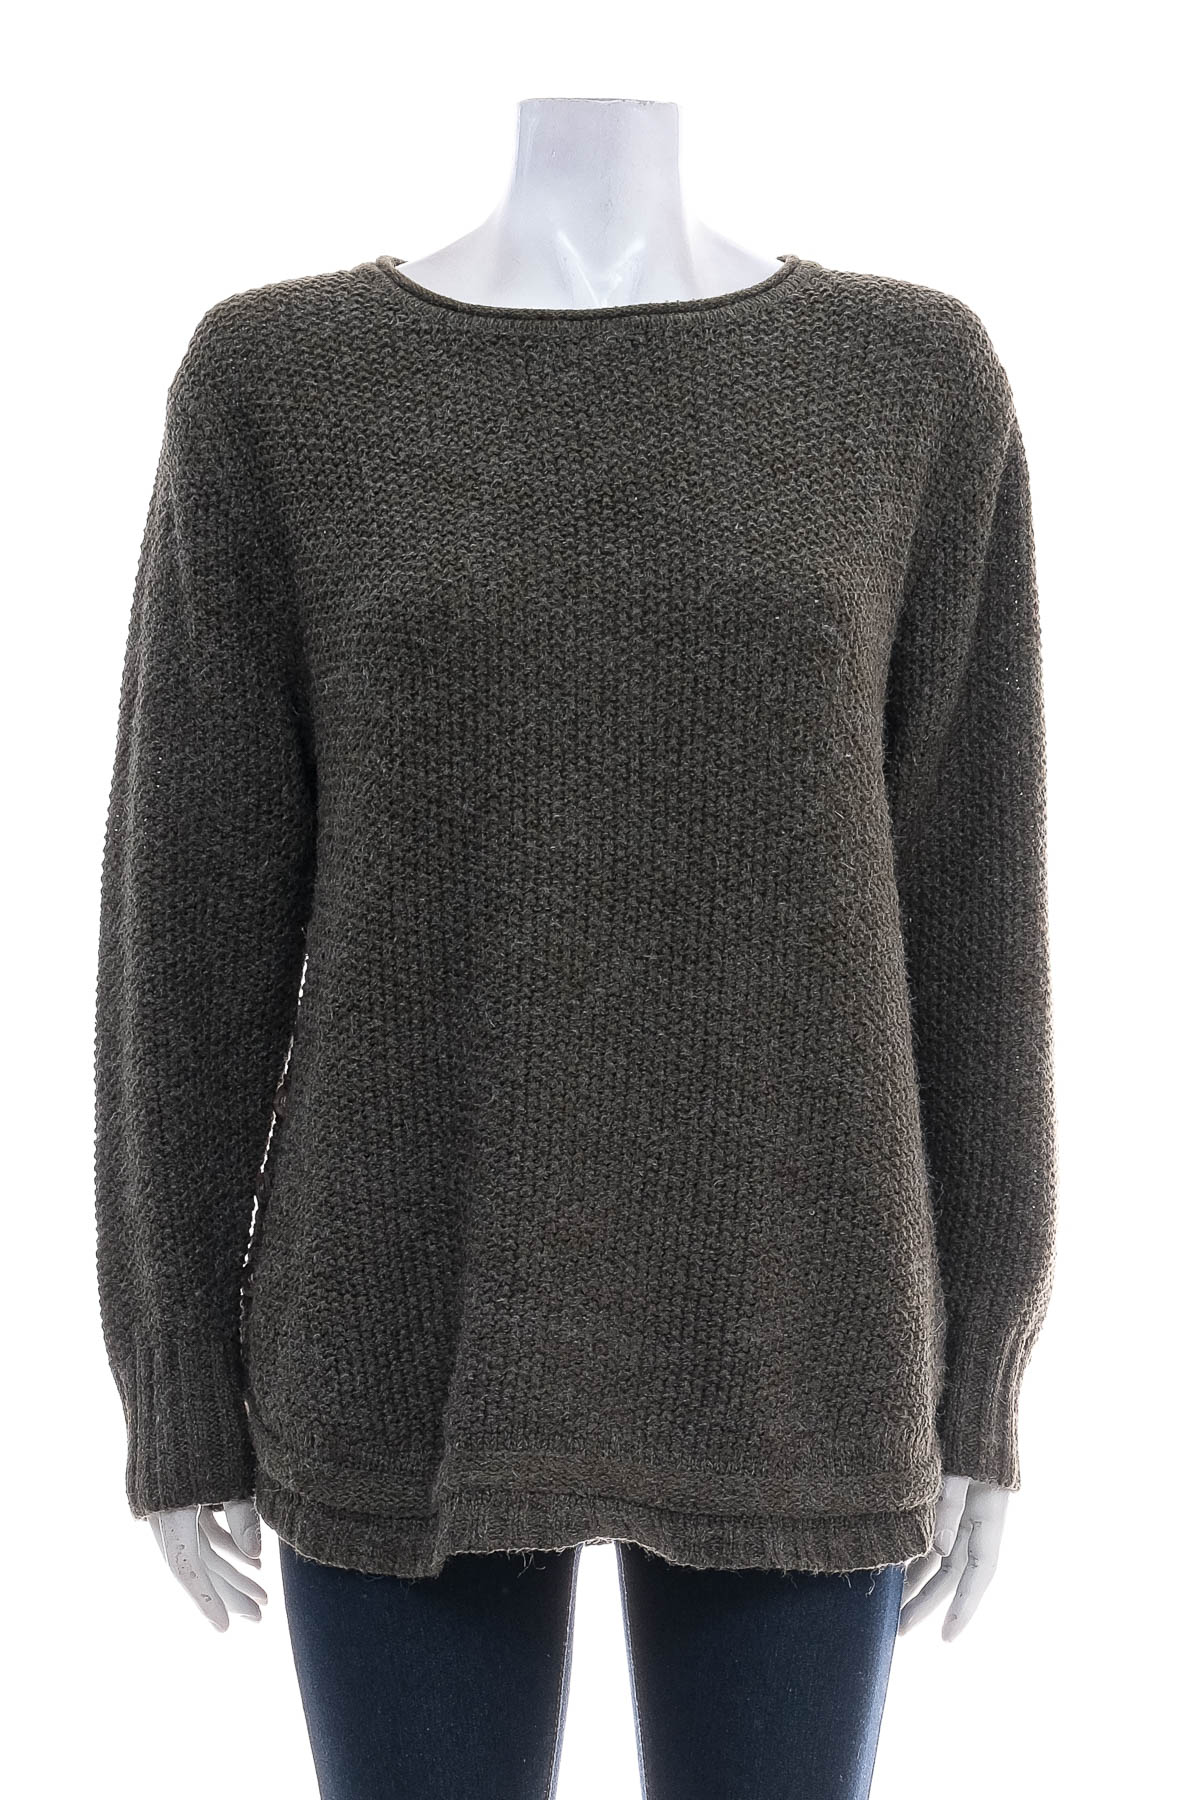 Women's sweater - Willow Tree - 0